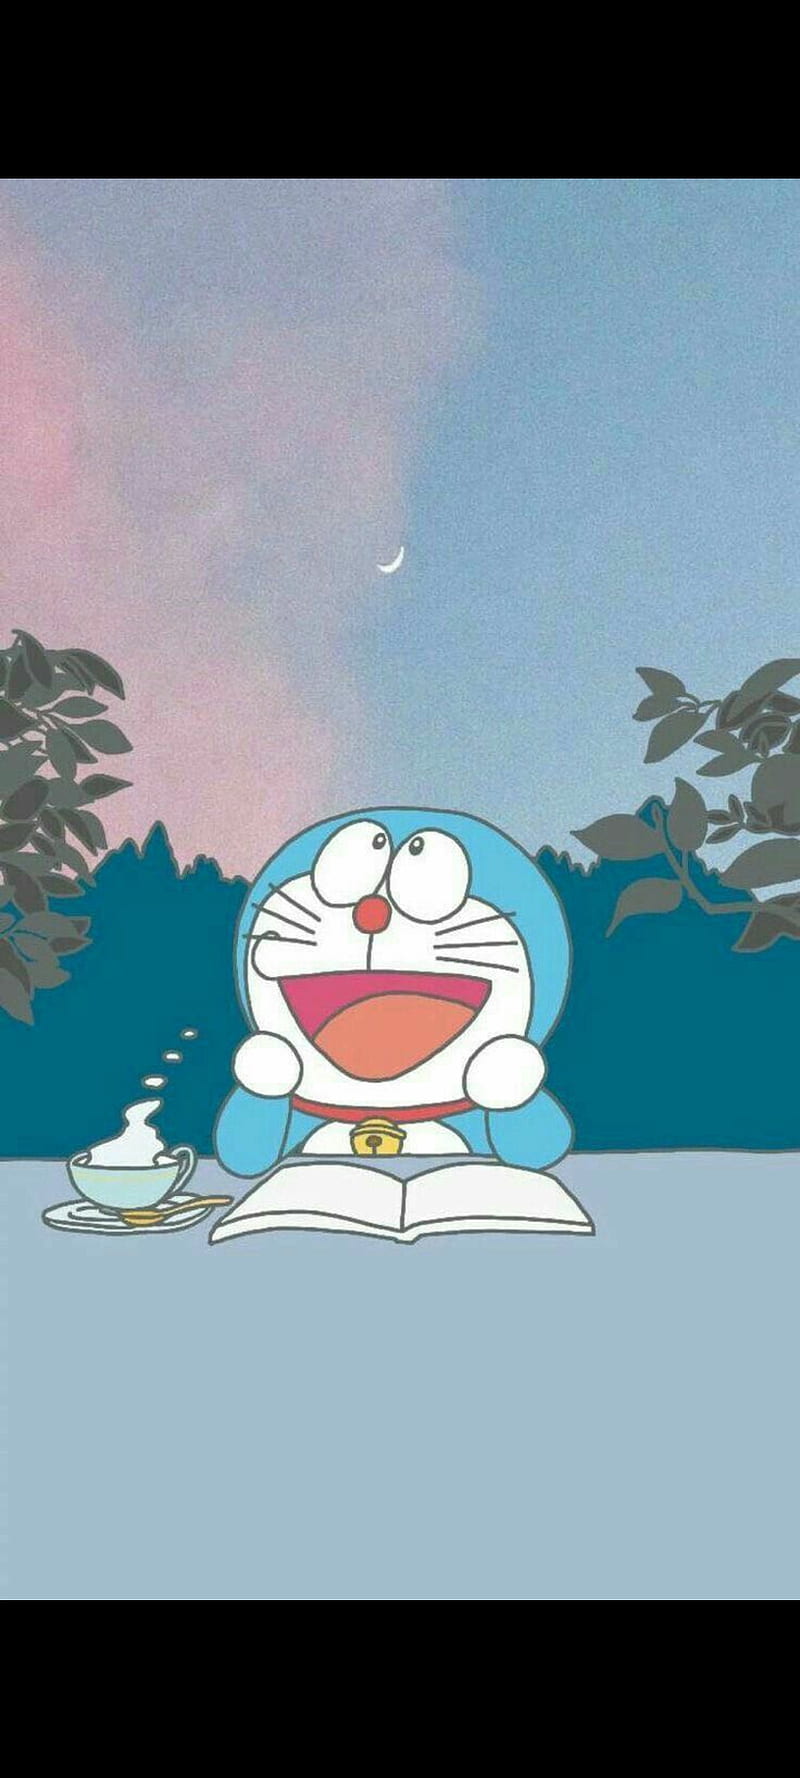 Nobita là nhân vật chính của bộ truyện Doraemon. Hãy khám phá cuộc phiêu lưu của cậu bé này cùng với Doraemon và những người bạn thân thiết của anh ta. Những tình huống hài hước và cảm động sẽ khiến bạn phải rơi lệ.